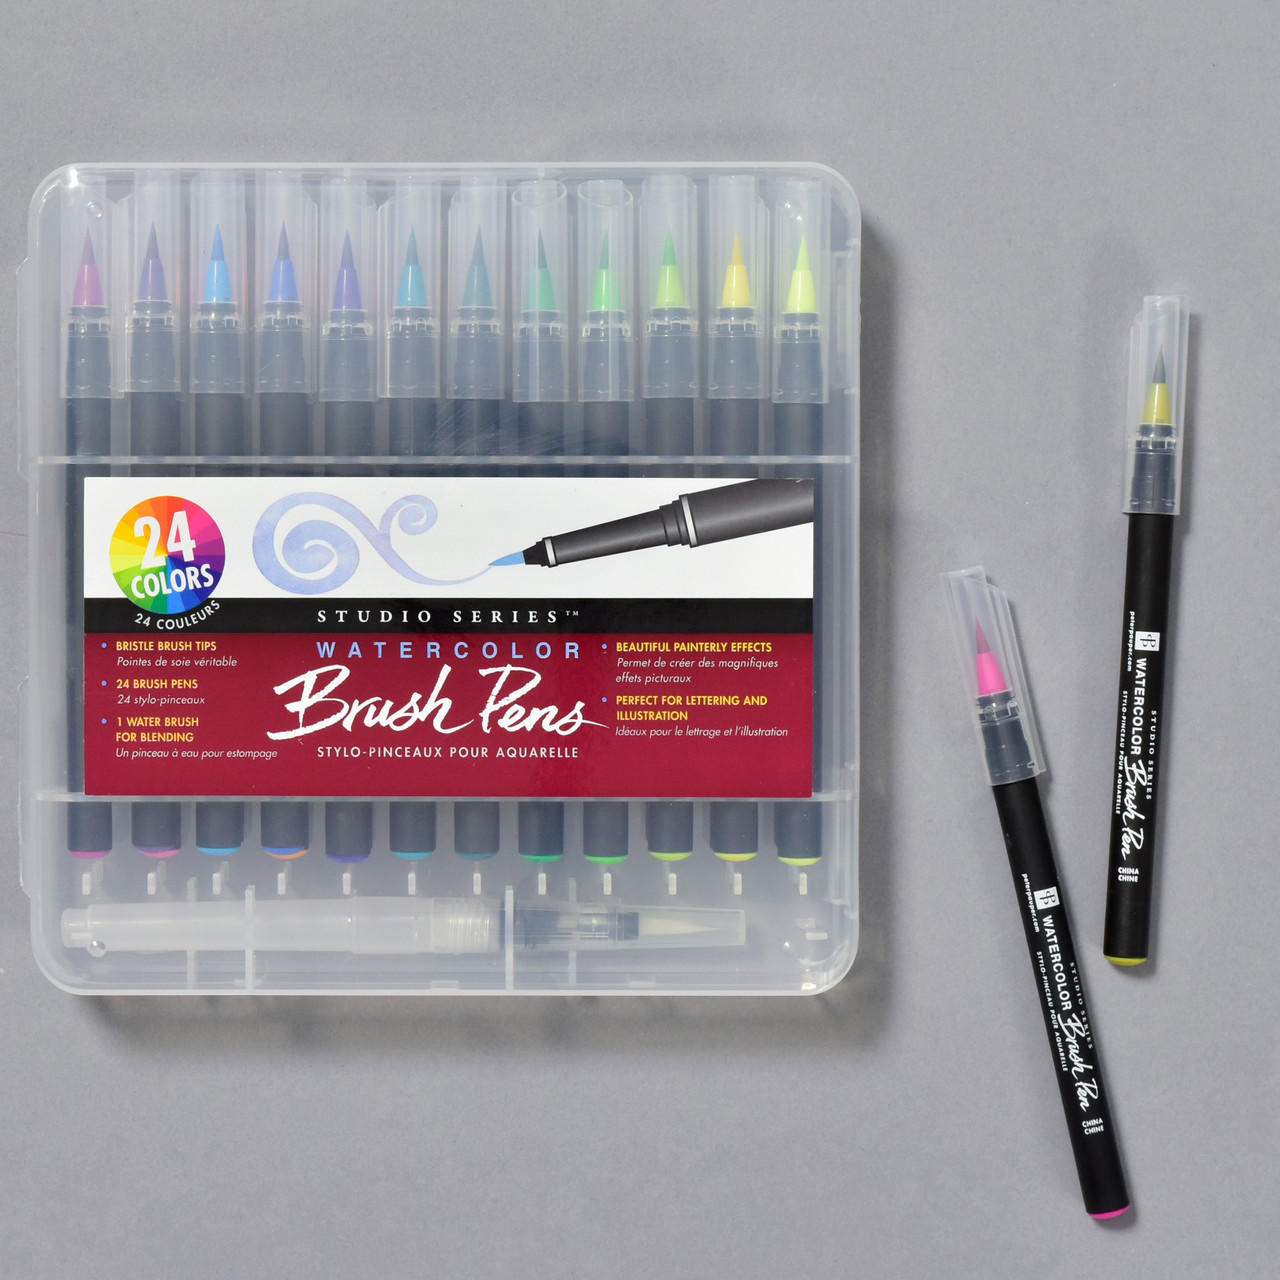 Studio Series Watercolor Brush Pens - Set of 24 by Peter Pauper Press